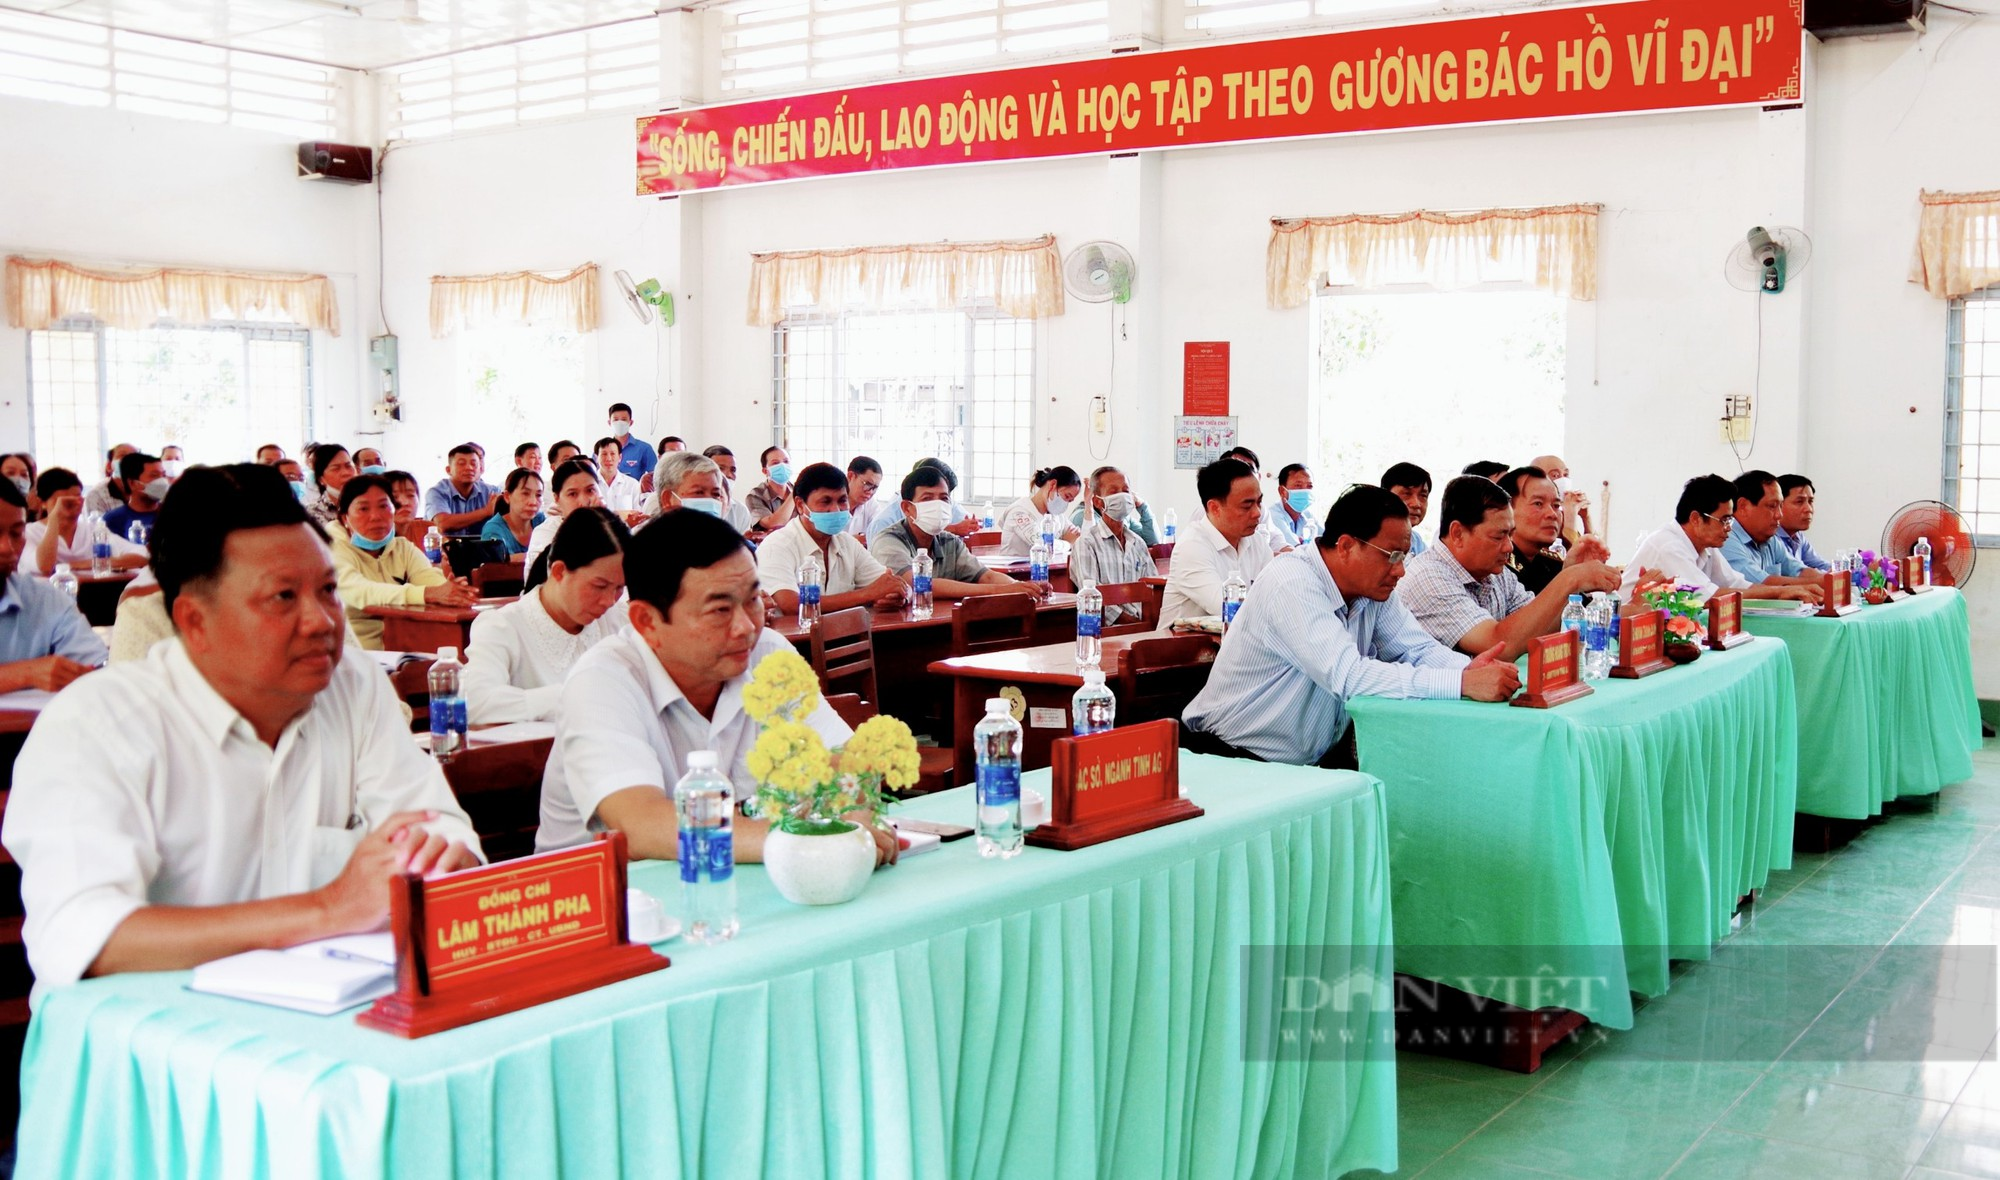 Chủ tịch Hội NDVN và đoàn đại biểu Quốc hội tỉnh An Giang tiếp xúc cử tri huyện Phú Tân - Ảnh 2.